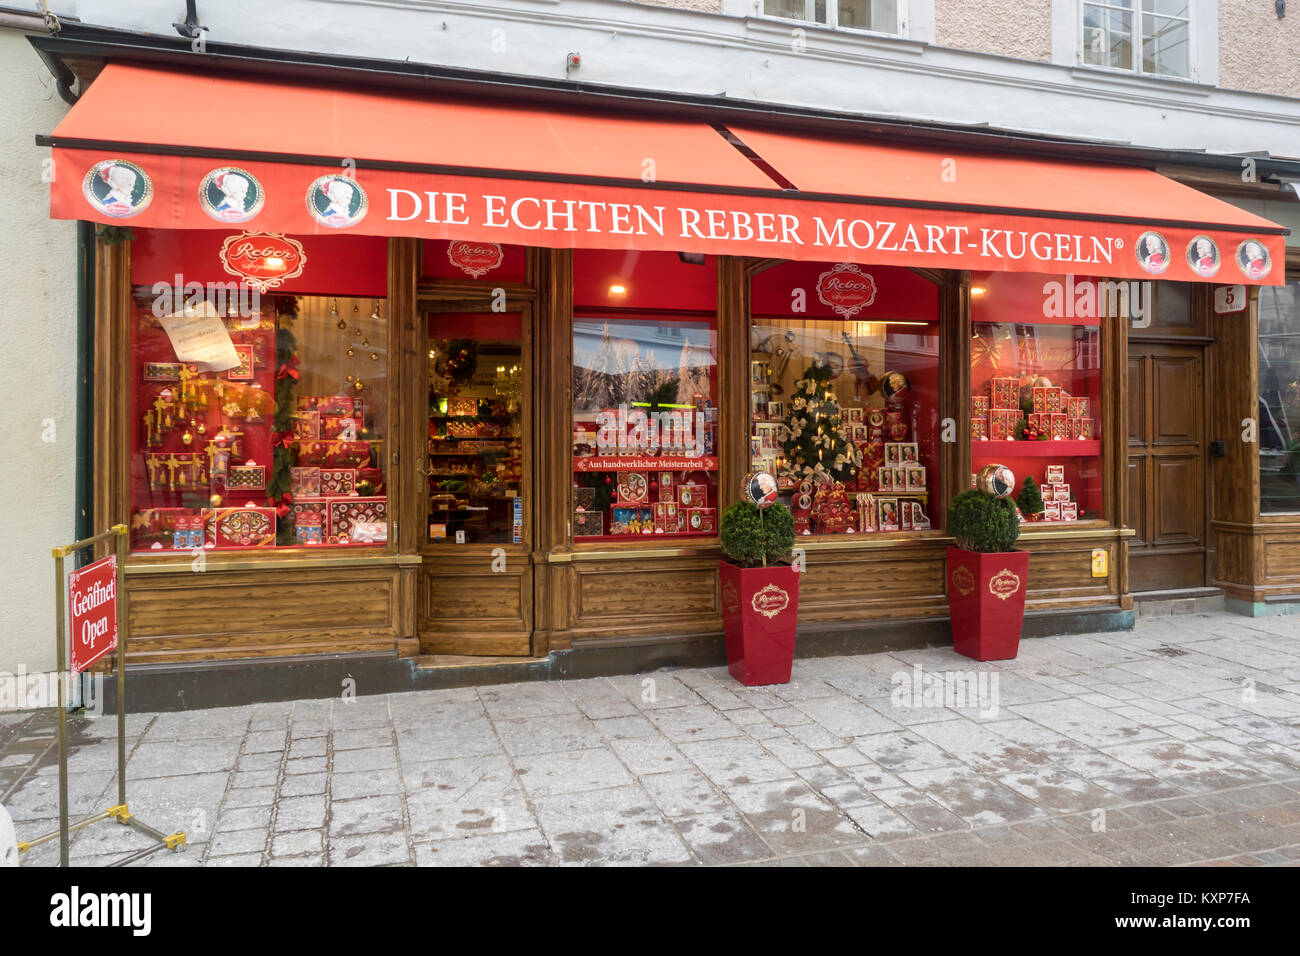 SALZBURG, AUSTRIA - DECEMBER 05, 2017:  Exterior view of Die Echten Reber Mozart-Kugeln Confectionery Shop in Alter Markt Square Stock Photo